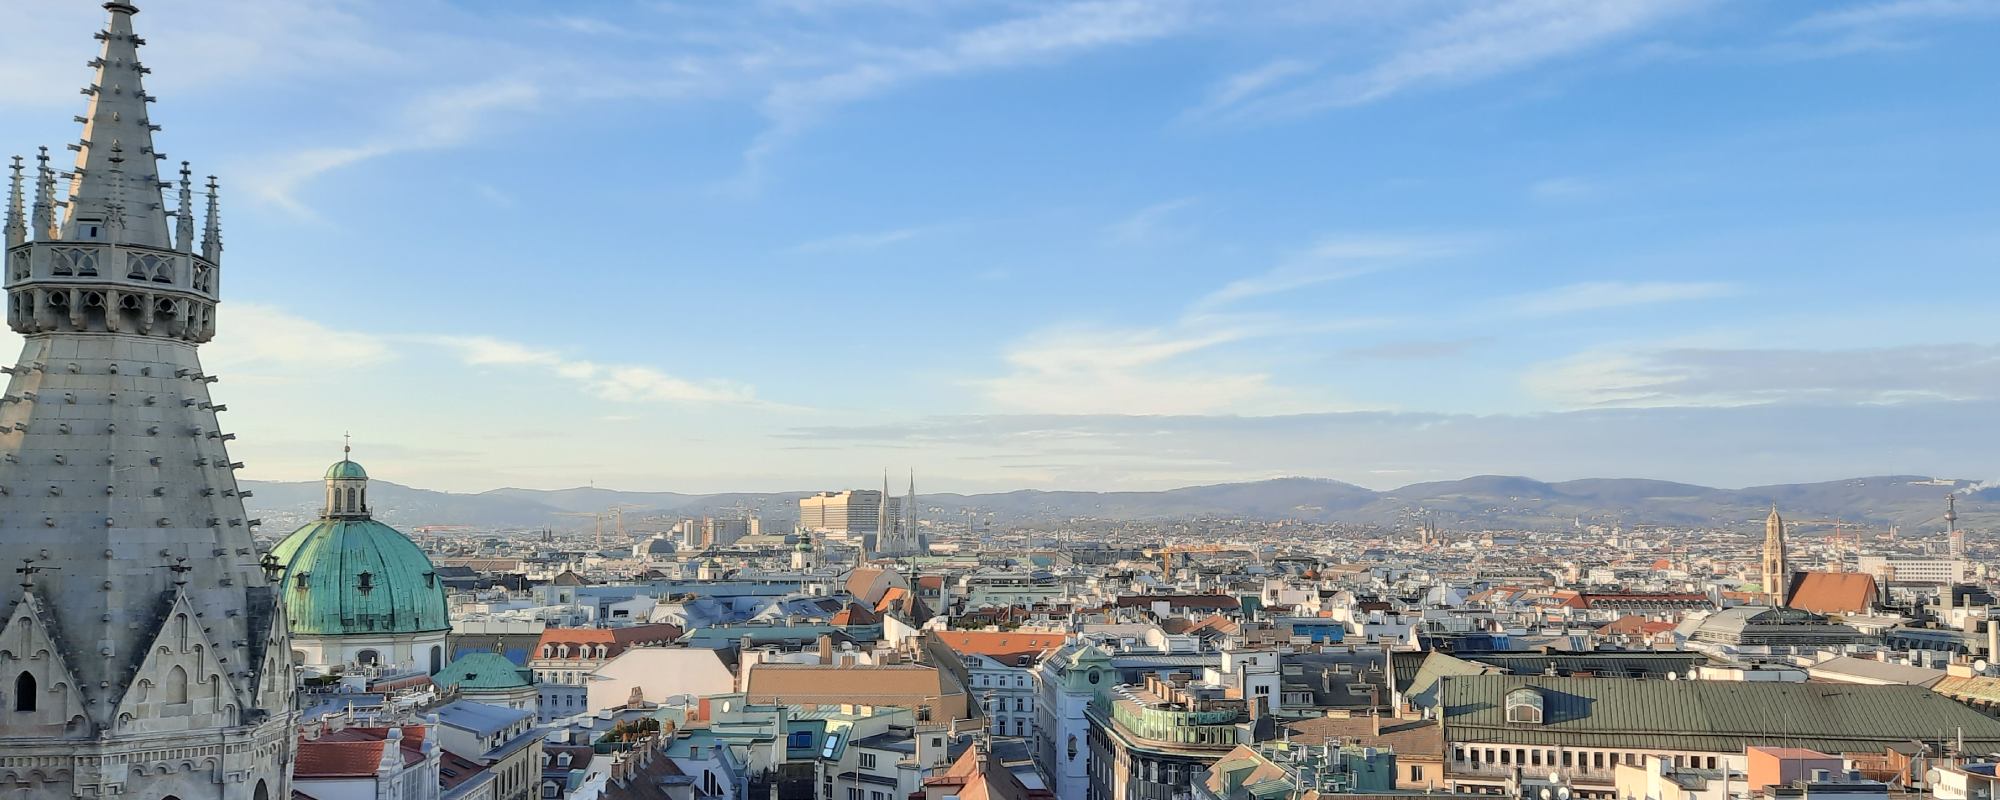 La plateforme de la tour nord de la cathédrale St Étienne offre un superbe panorama sur Vienne.